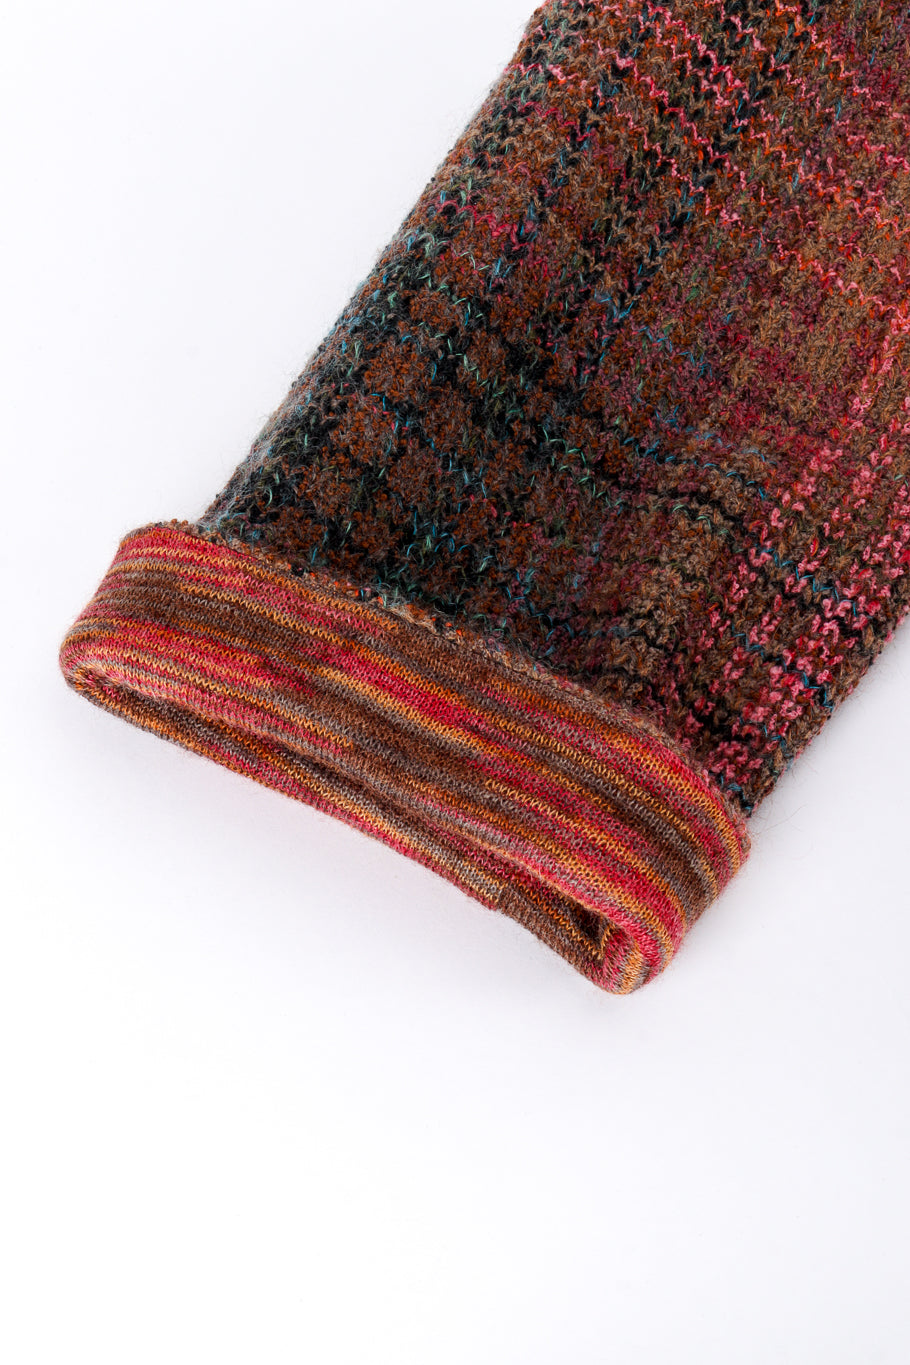 Missoni Plaid Striped Knit Duster sleeve closeup @recess la